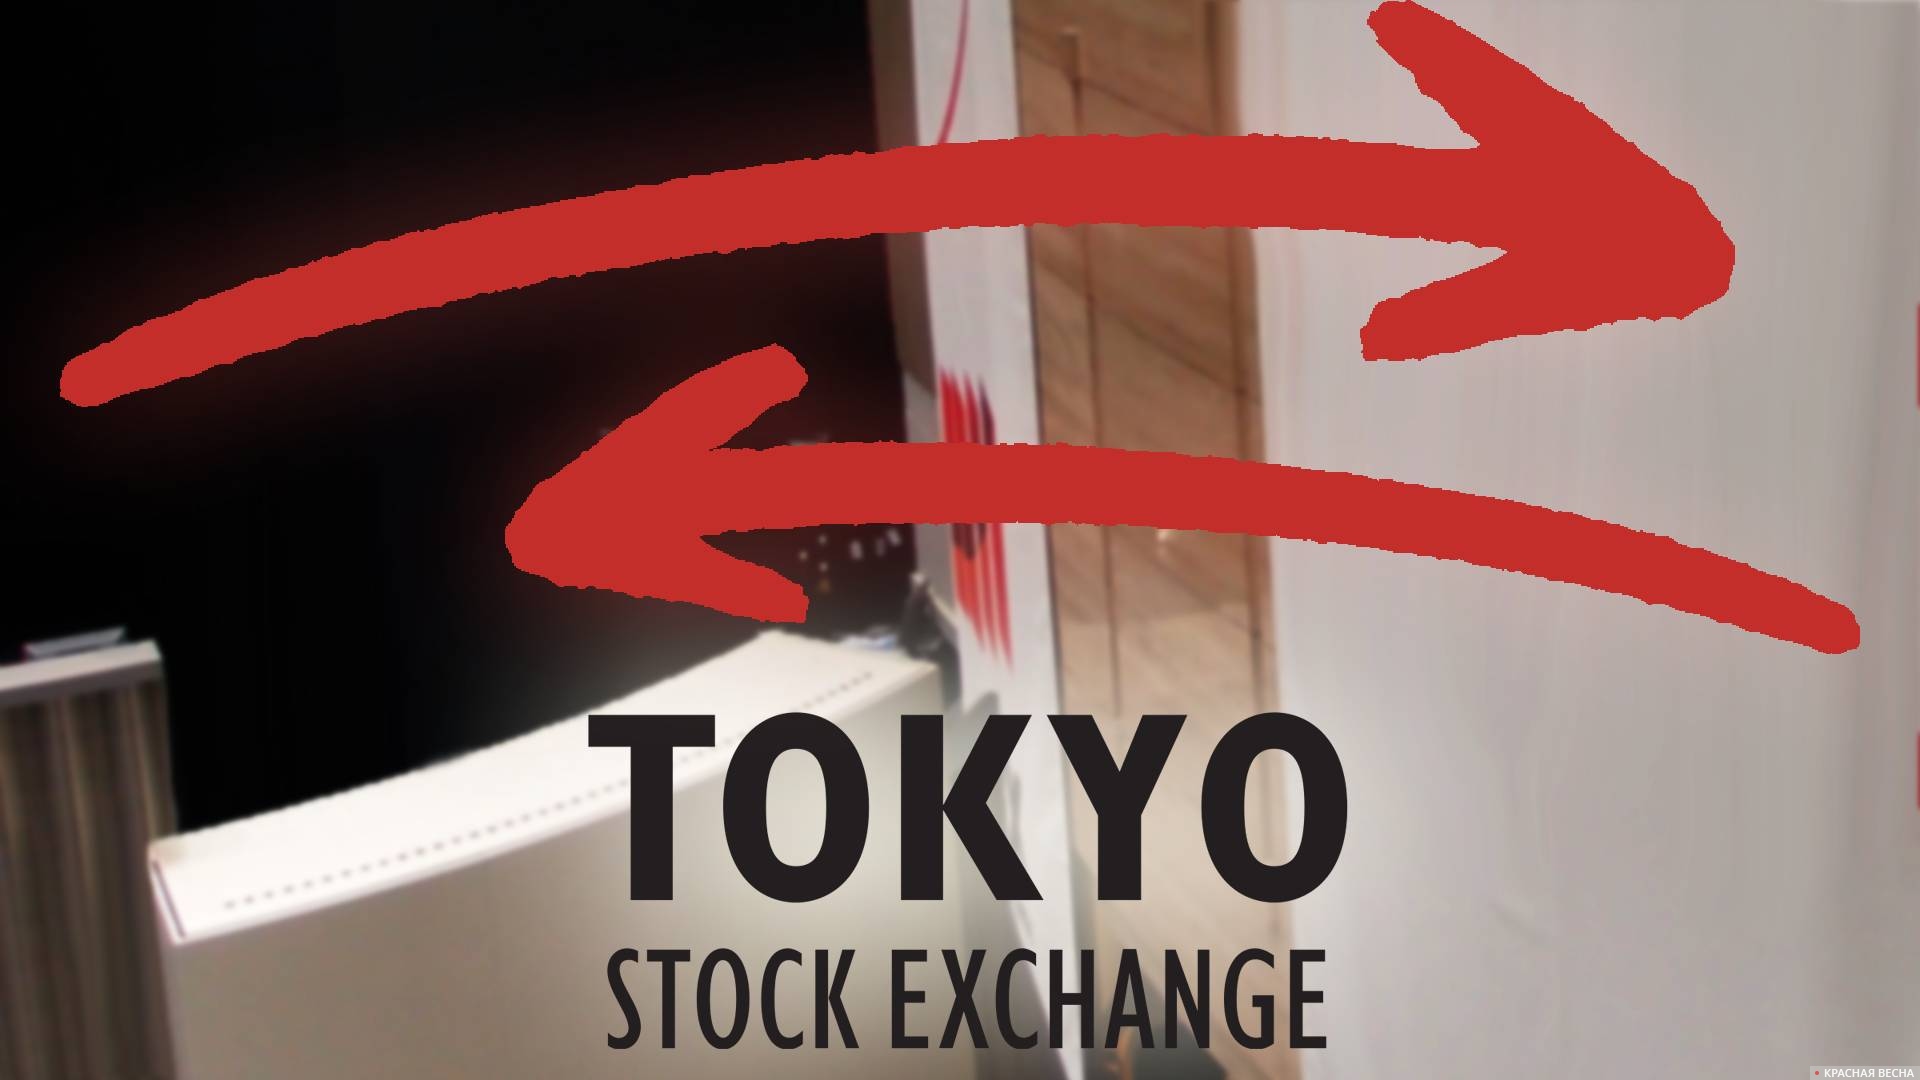 Символика Токийской фондовой биржи на фоне ее интерьера